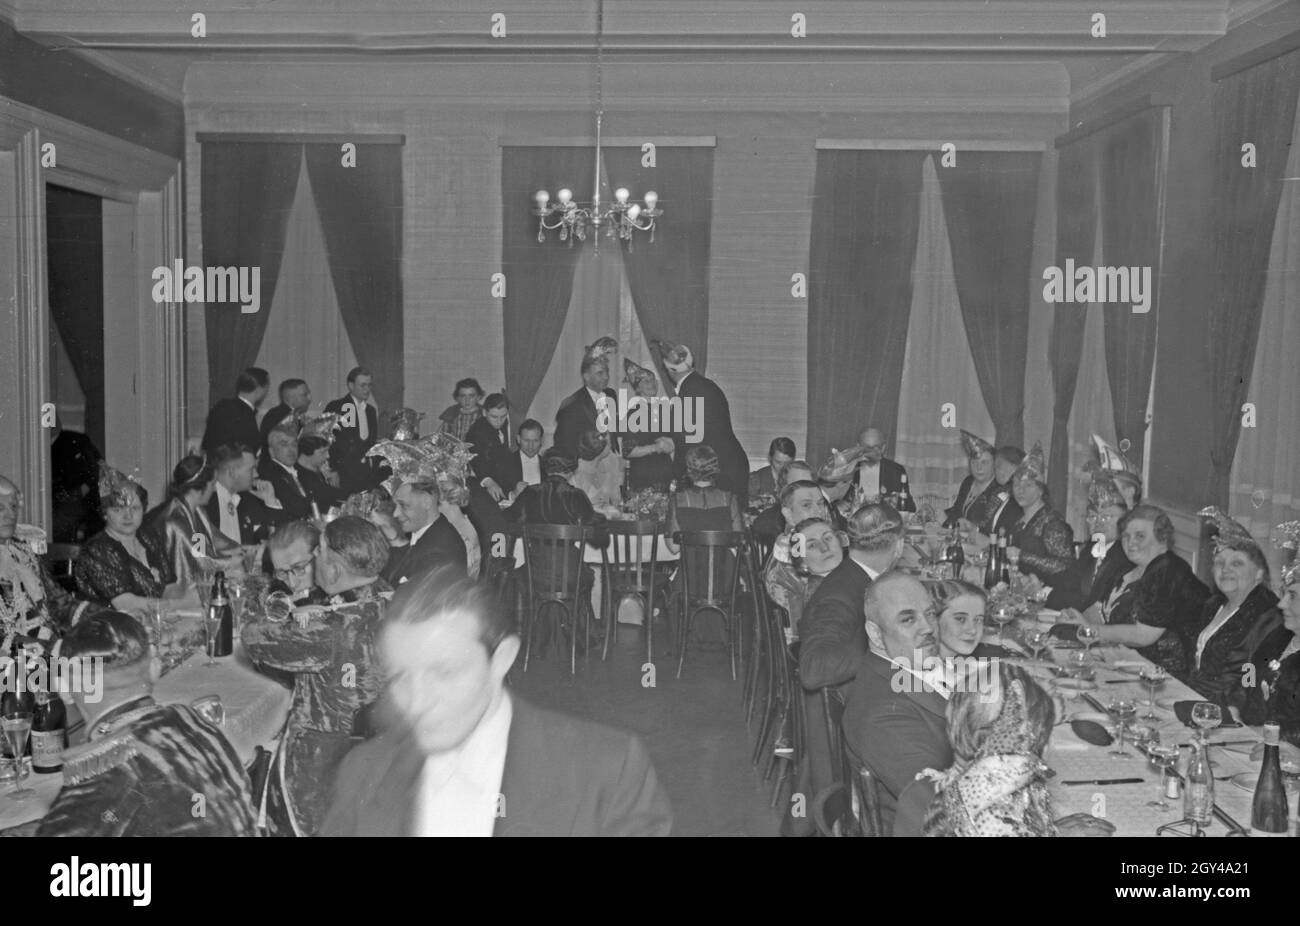 Offizielle und Granden der Mainzer Fastnacht feiern die Kampagne 1938. Funzionari e presidenti celebra il carnevale 1938 presso la città di Magonza. Foto Stock